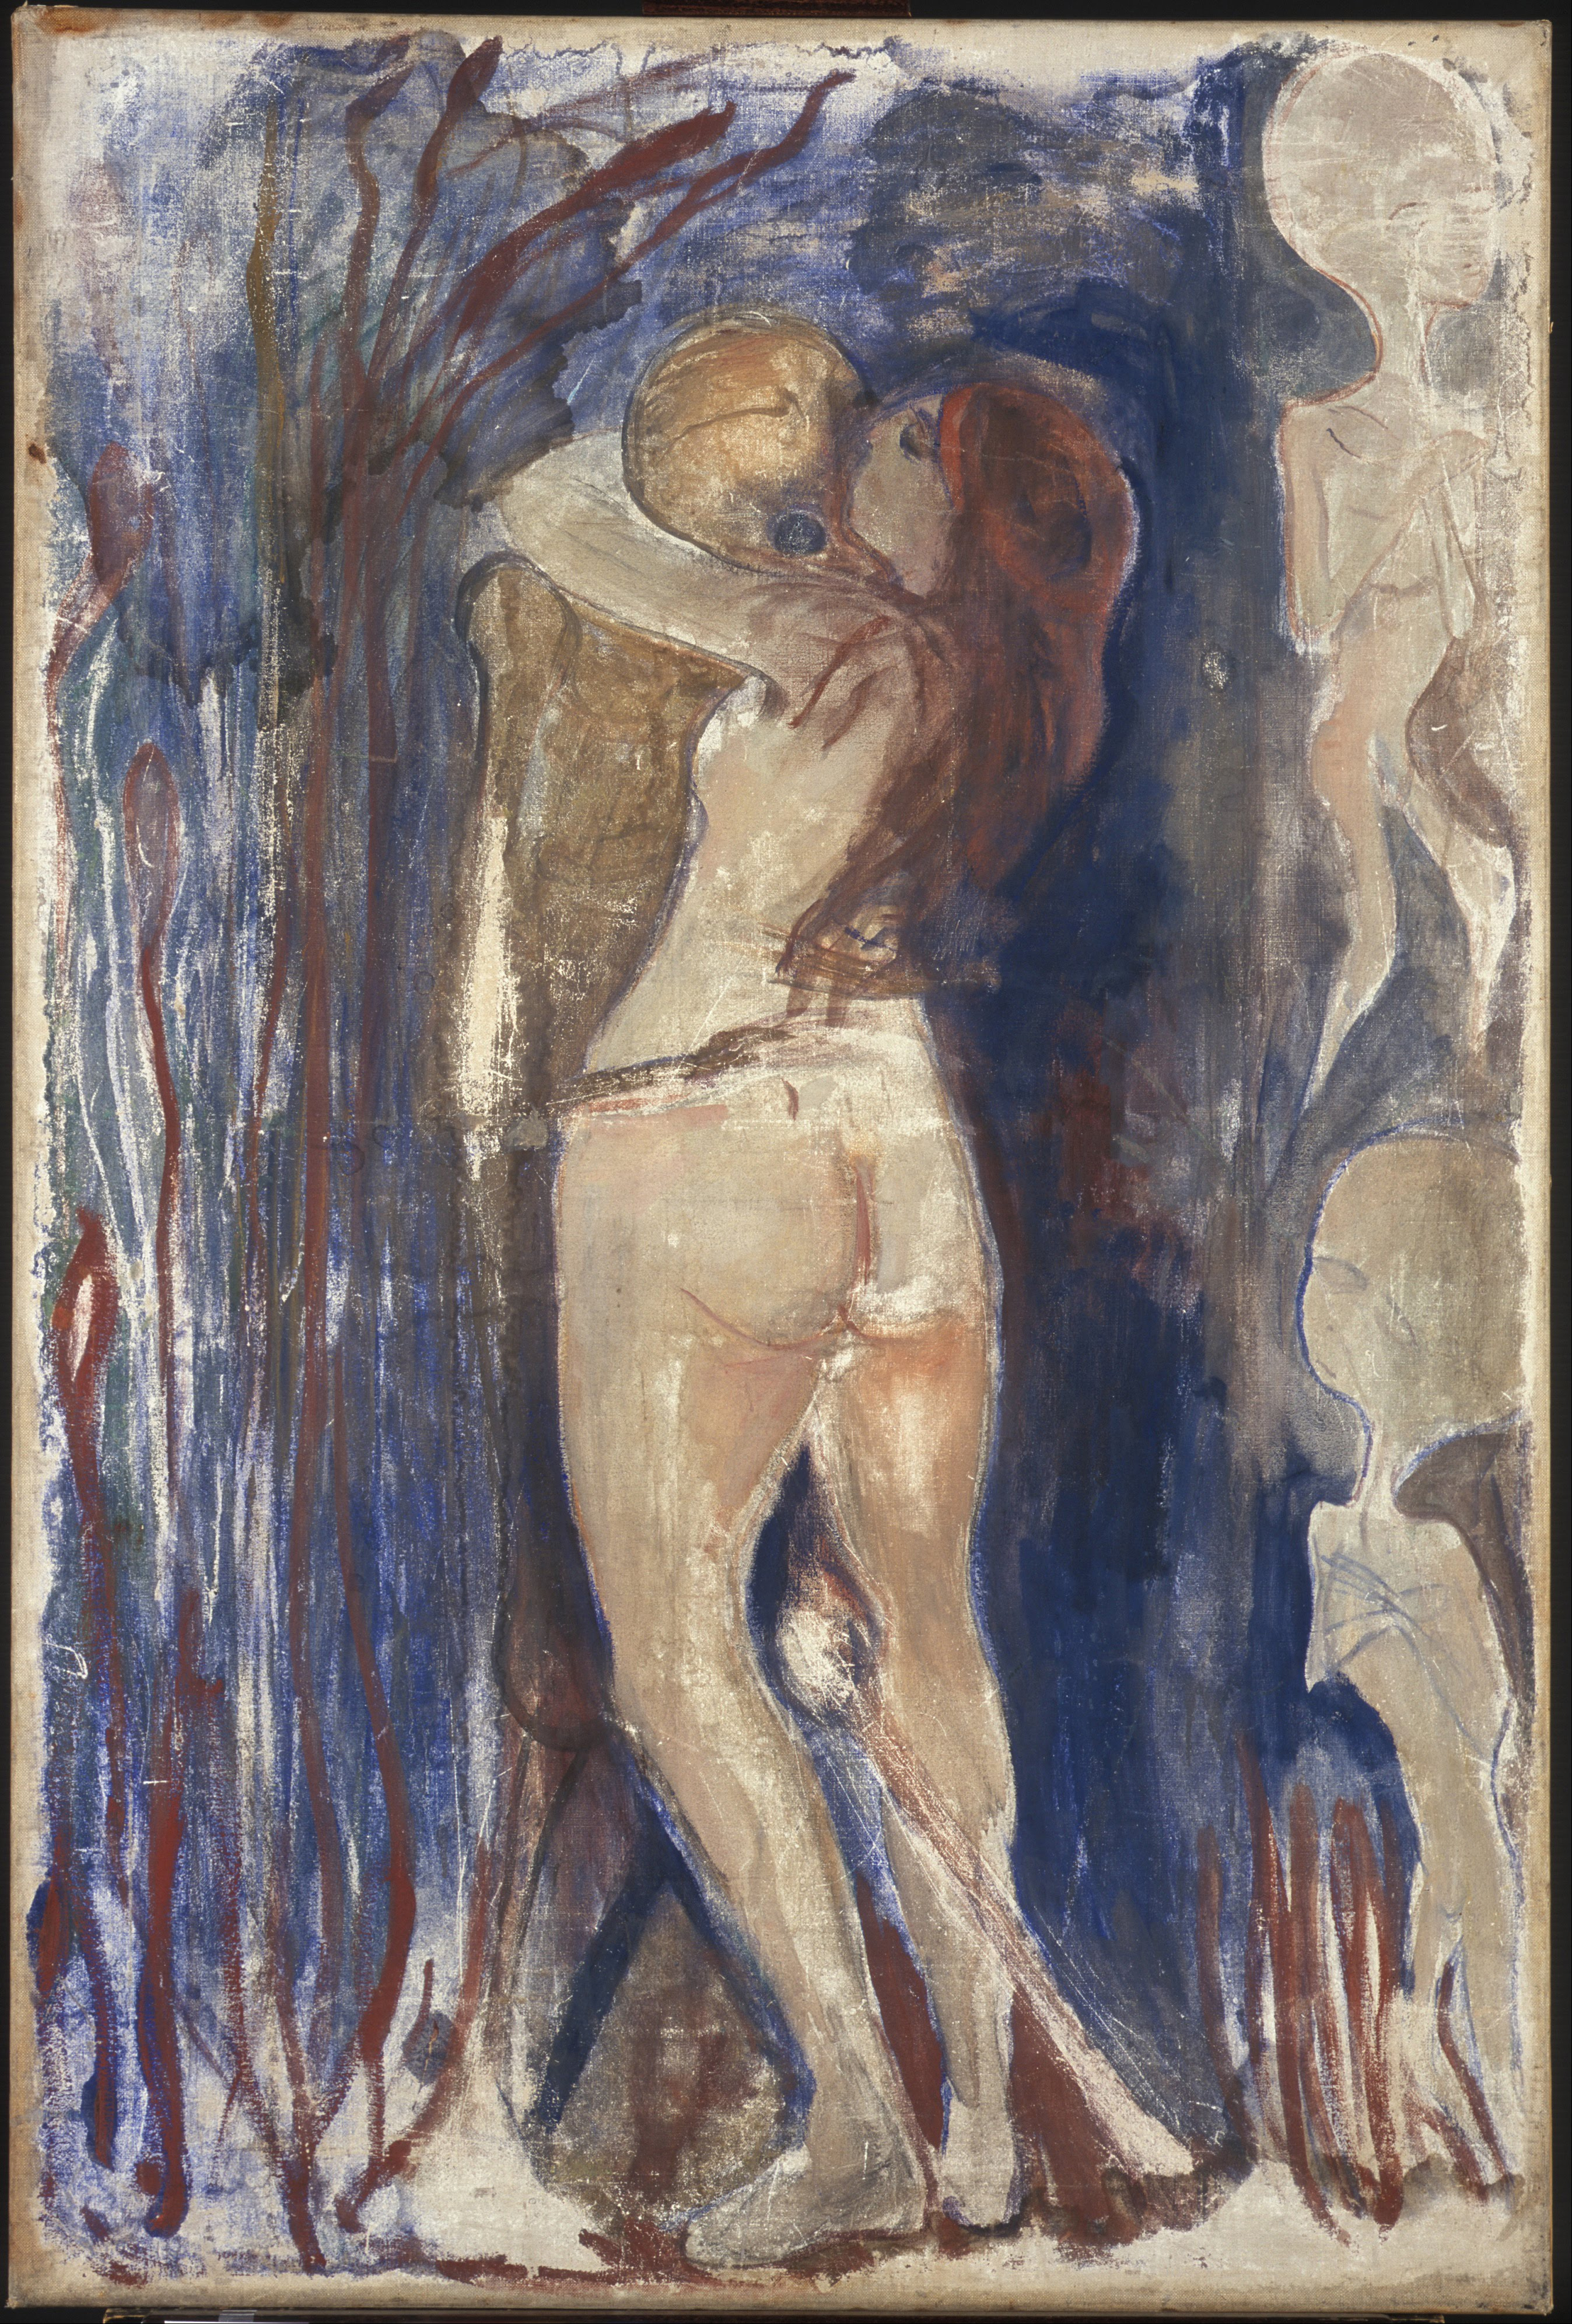 Ölüm ve Hayat by Edvard Munch - 1894 